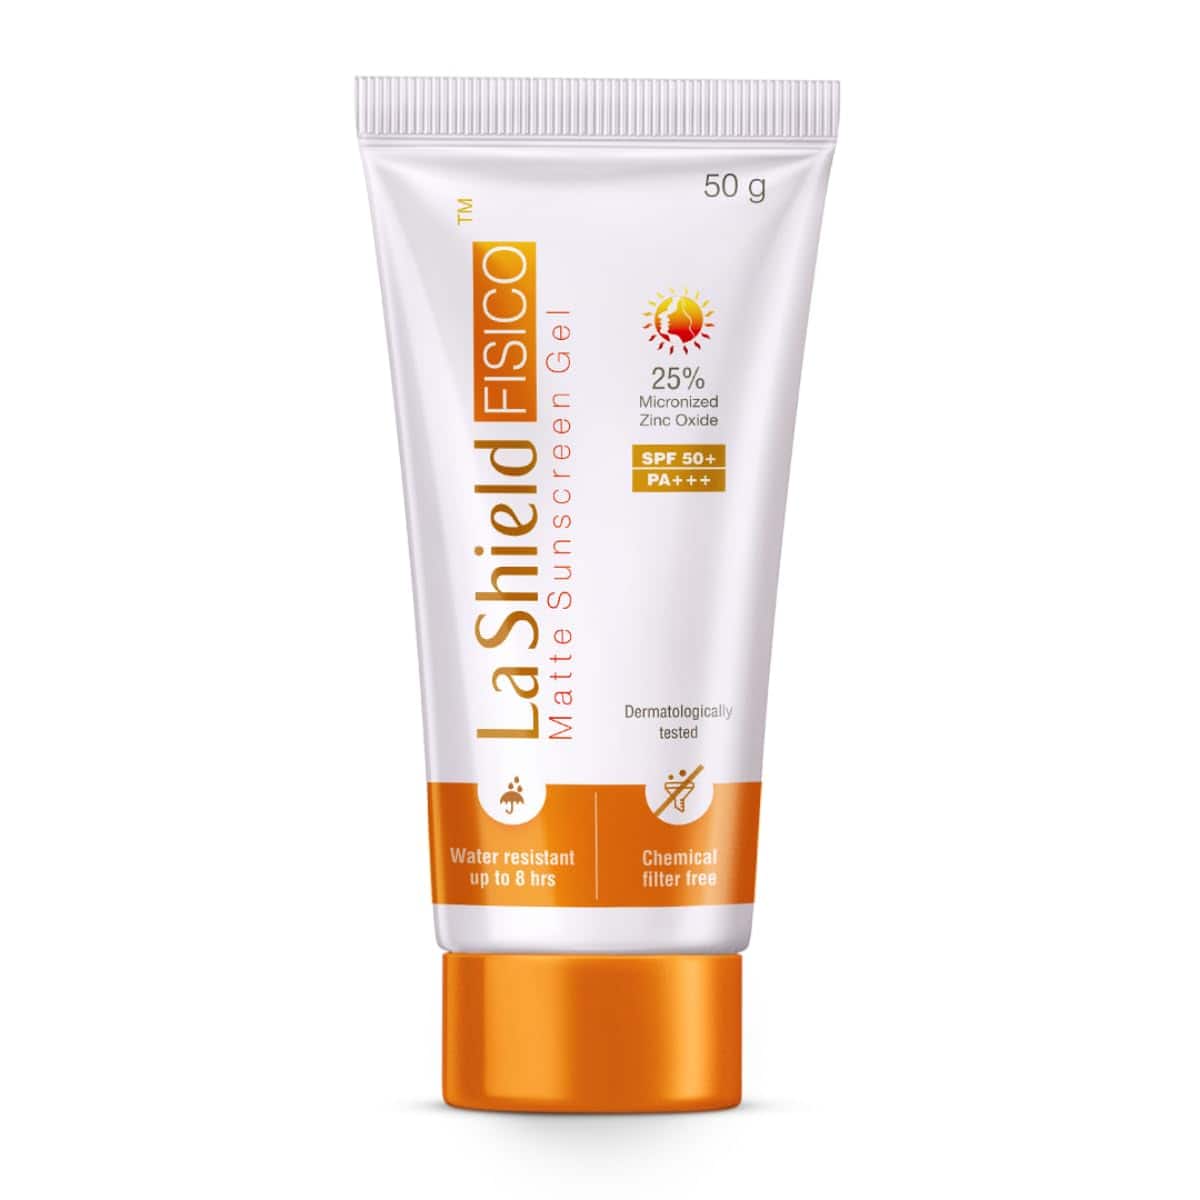 La Shield Fisico SPF 50+ Mineral-Based Sunscreen